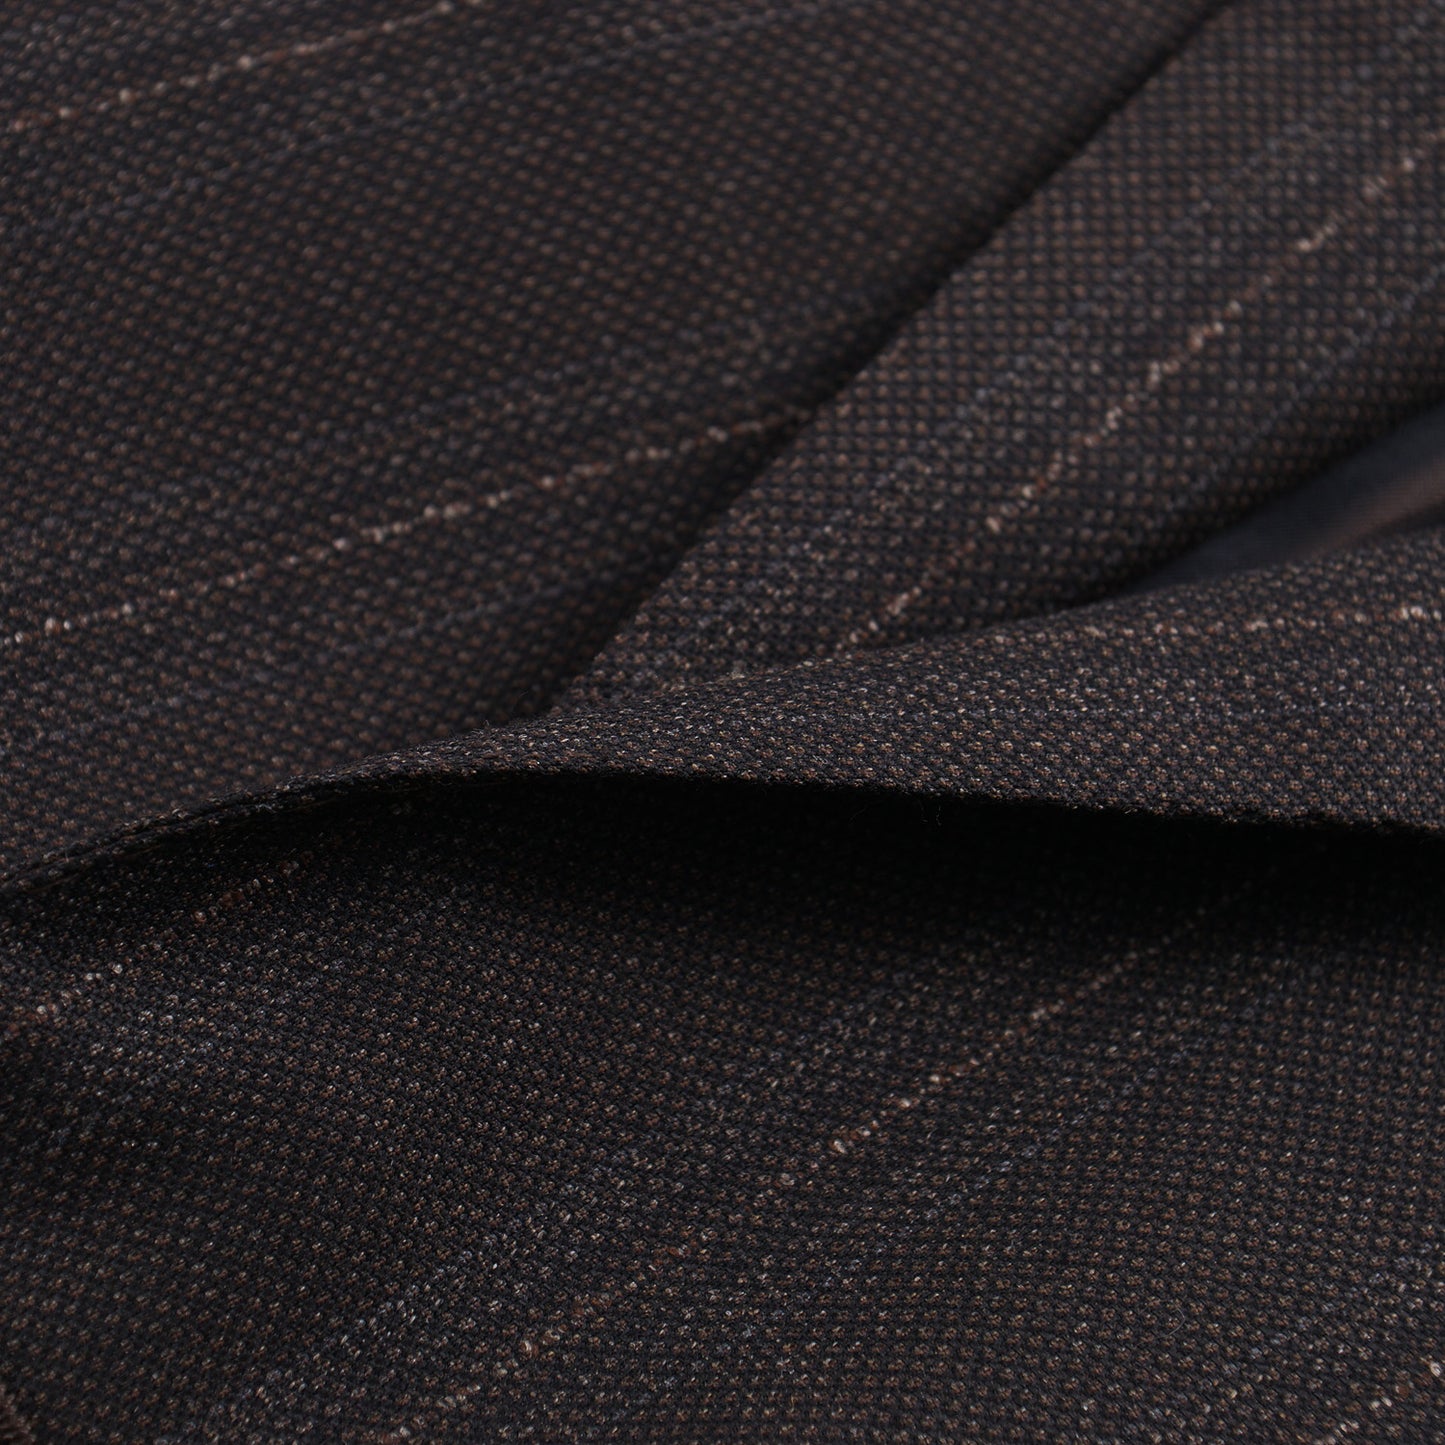 Isaia 'Sanita' Woven Stripe Wool Suit - Top Shelf Apparel